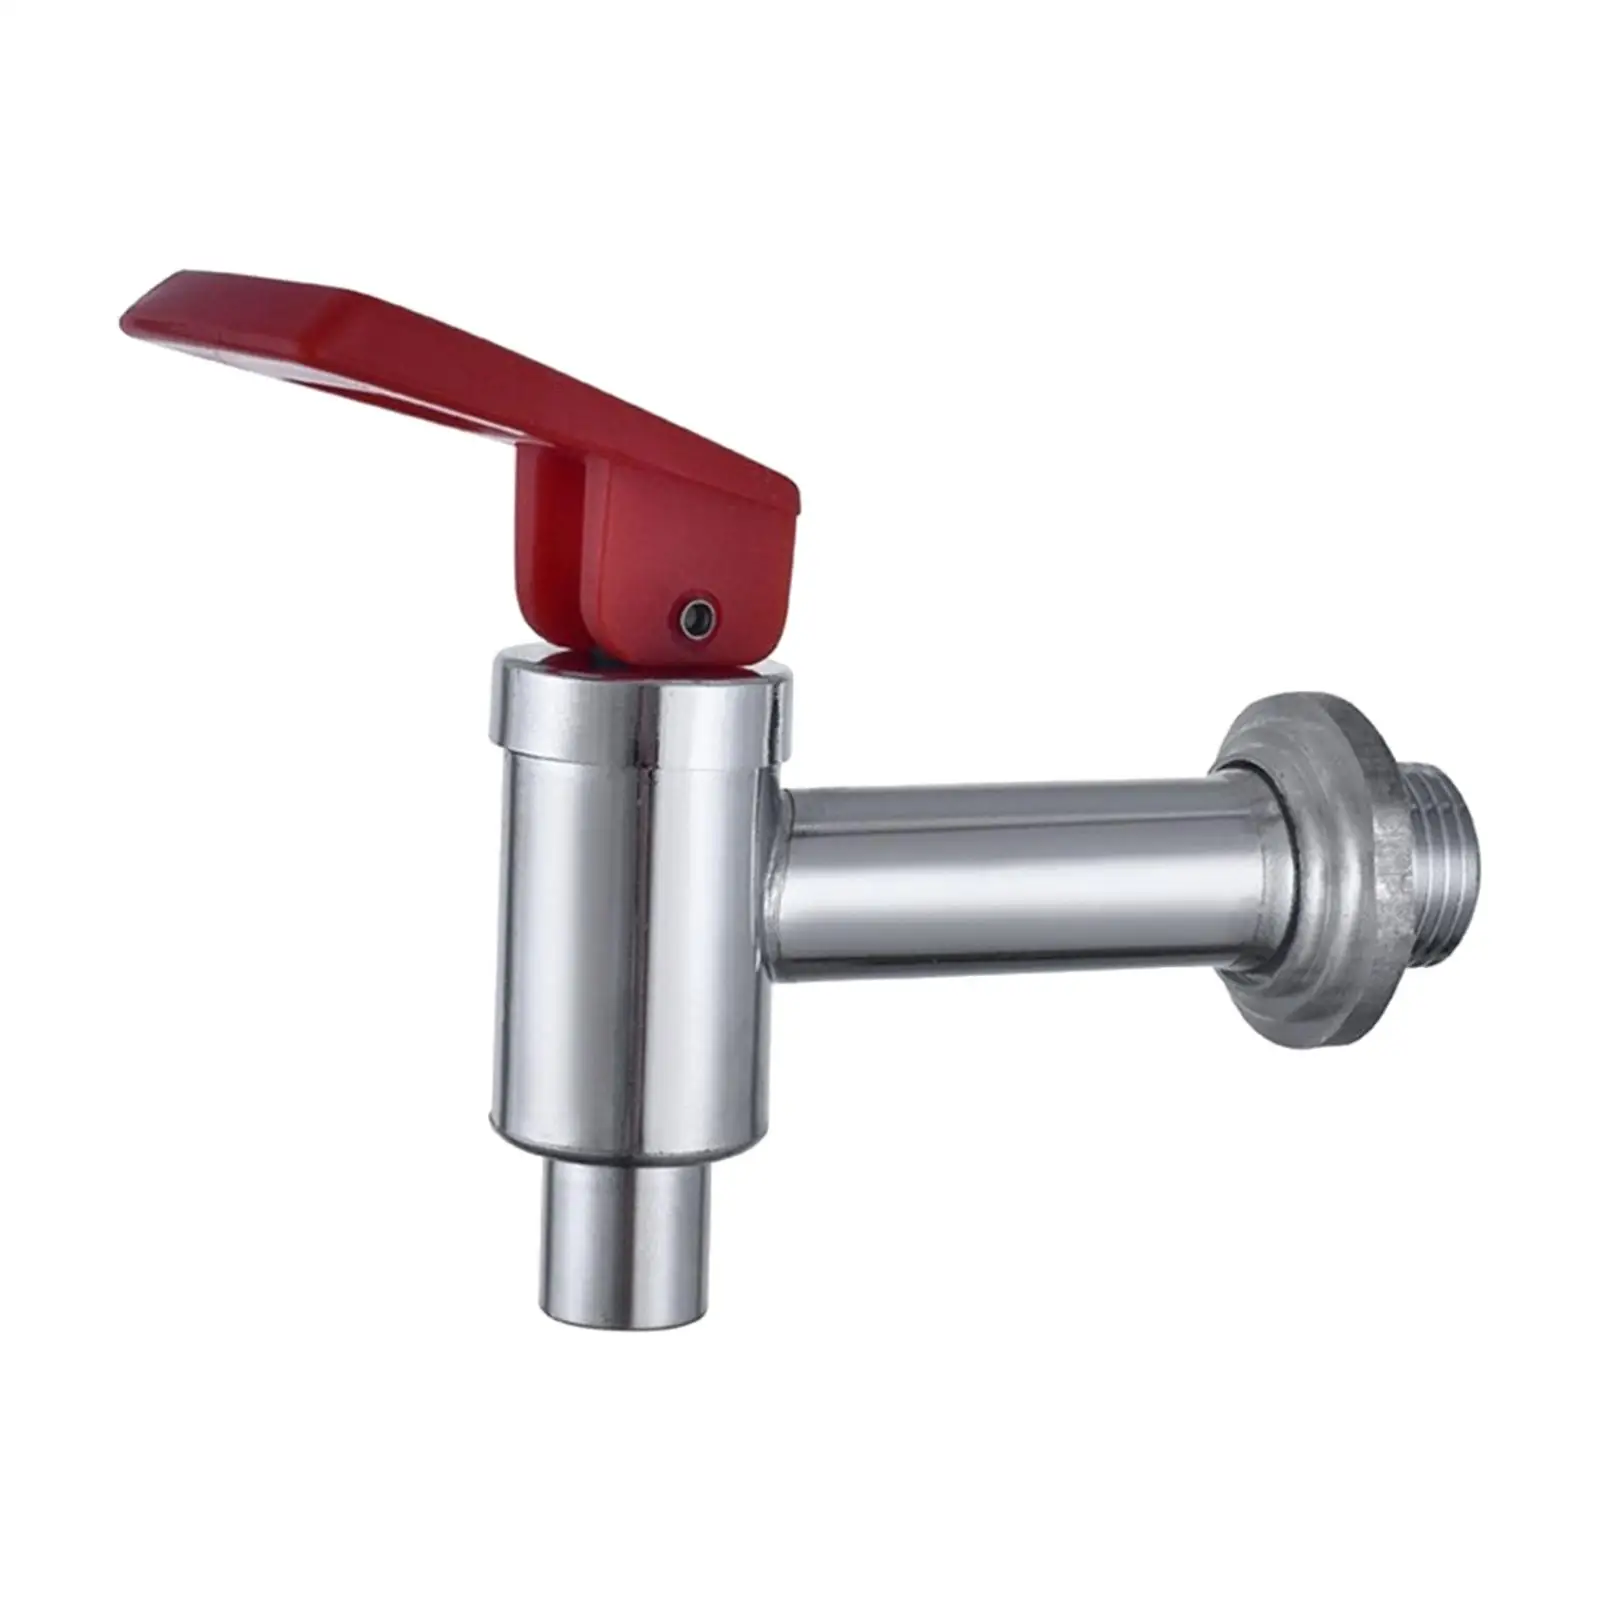 Spigot for Beverage Dispenser Jug Faucet for Drink Dispenser Sink Water Cask